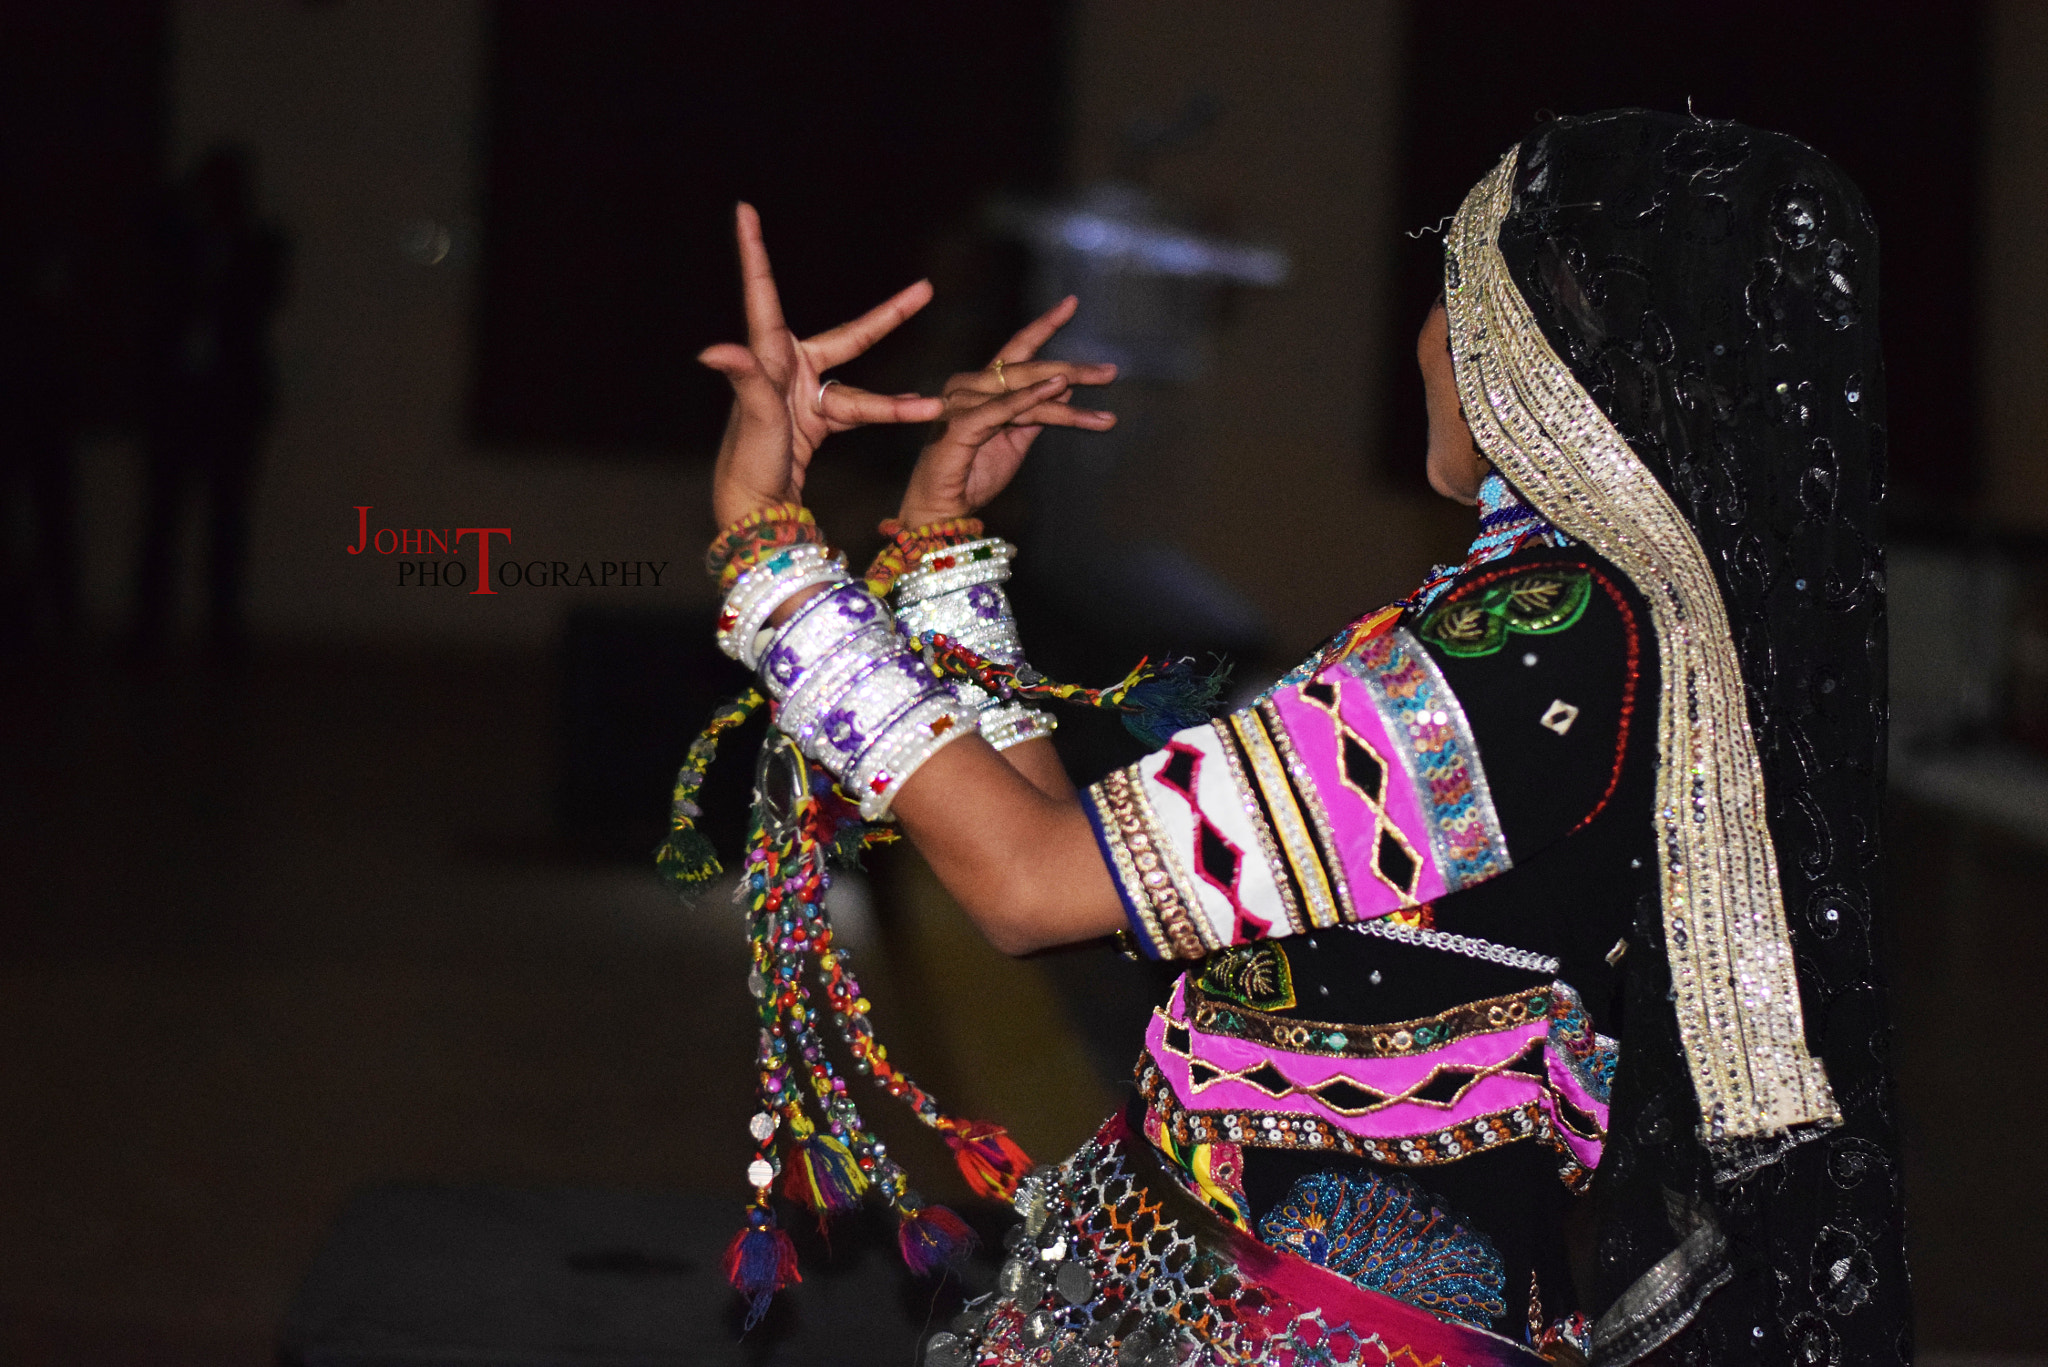 Nikon D3300 + AF Zoom-Nikkor 80-200mm f/4.5-5.6D sample photo. Rajasthani dance photography